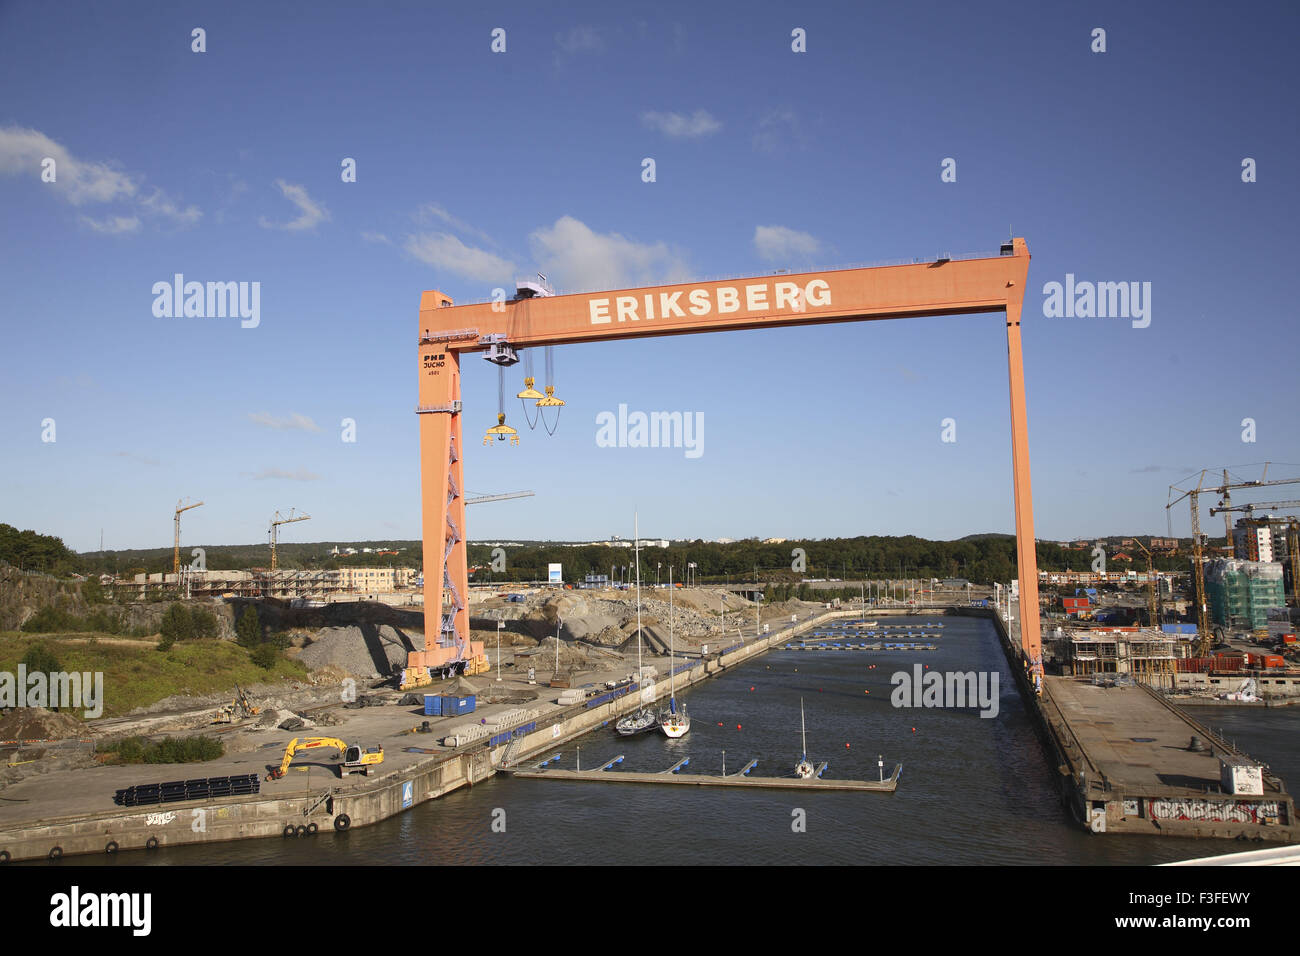 Grue mobile Eriksberg pour la construction navale, Göteborg, Comté de Vastra Gotaland, Suède, pays nordiques, Europe Banque D'Images